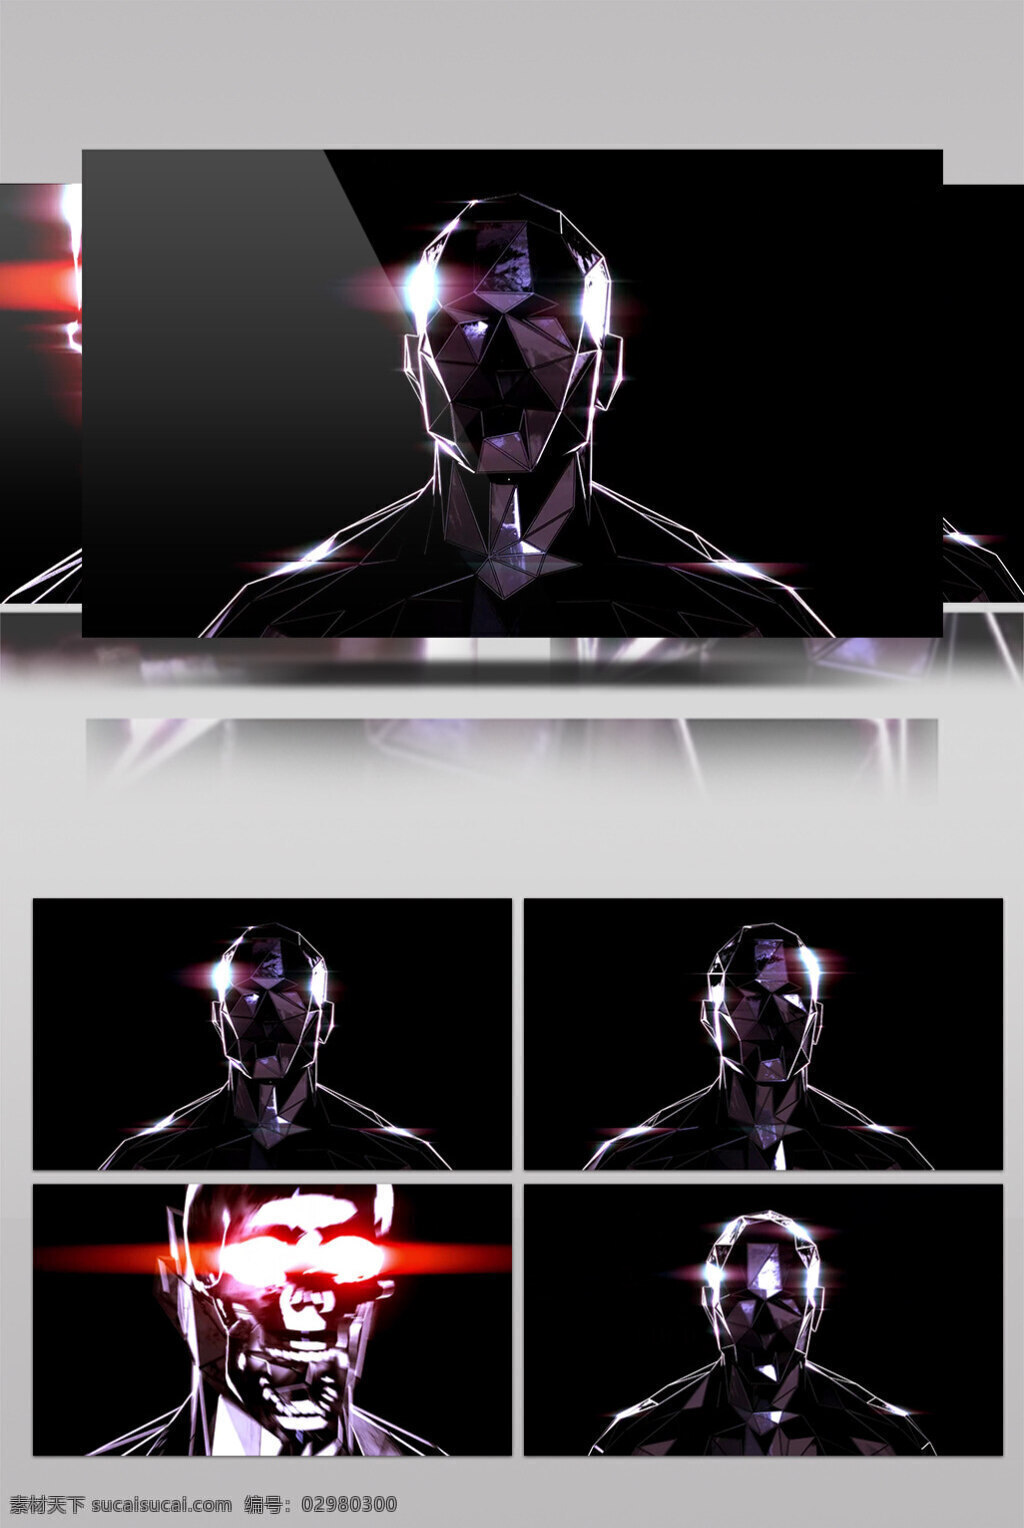 金属 人 动态 视频 金属人体 发光红眼 生活实用 节目使用 实用背景素材 舞台背景素材